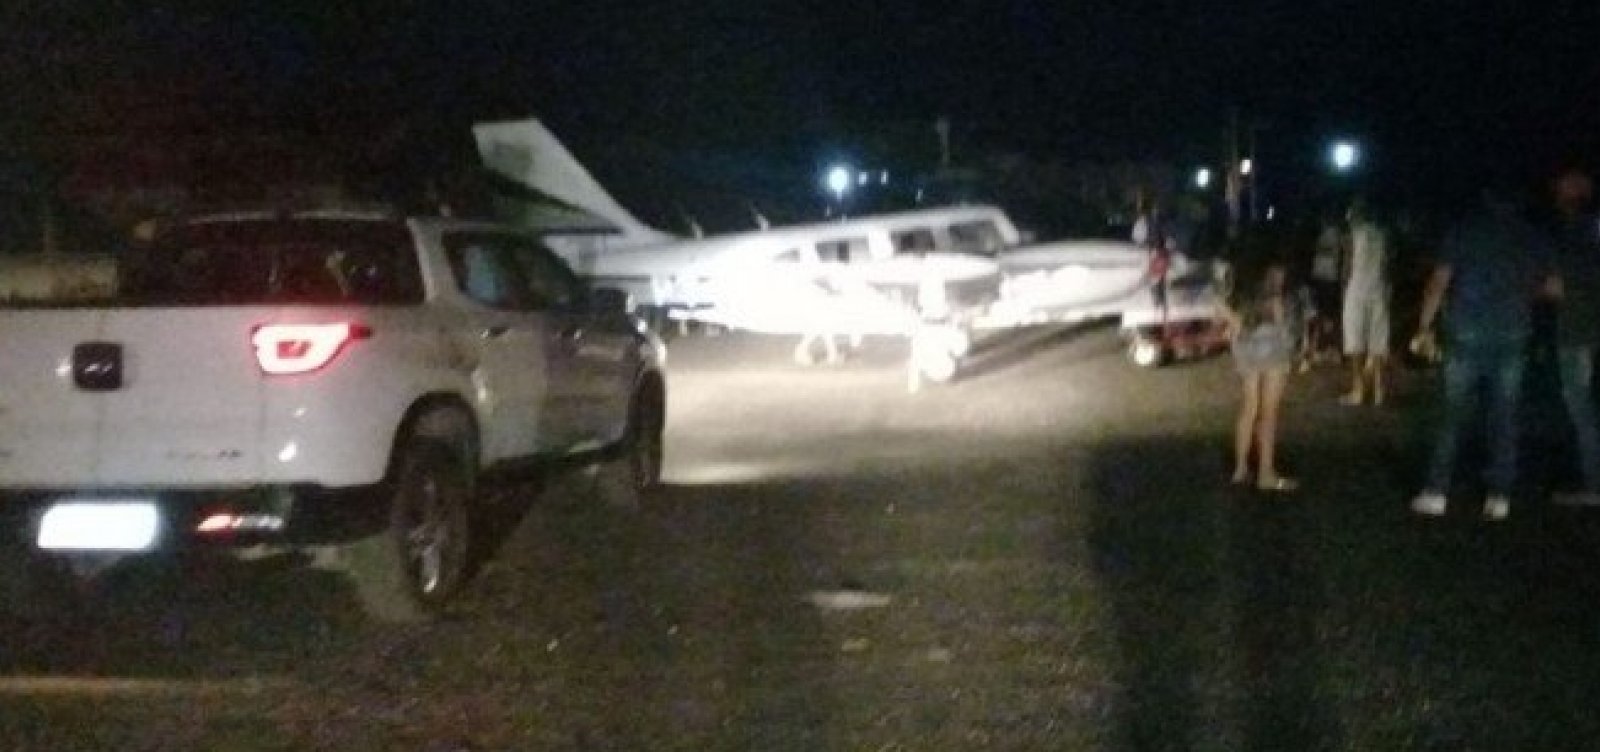 Avião de Amado Batista faz voo rasante antes de pousar em Jequié